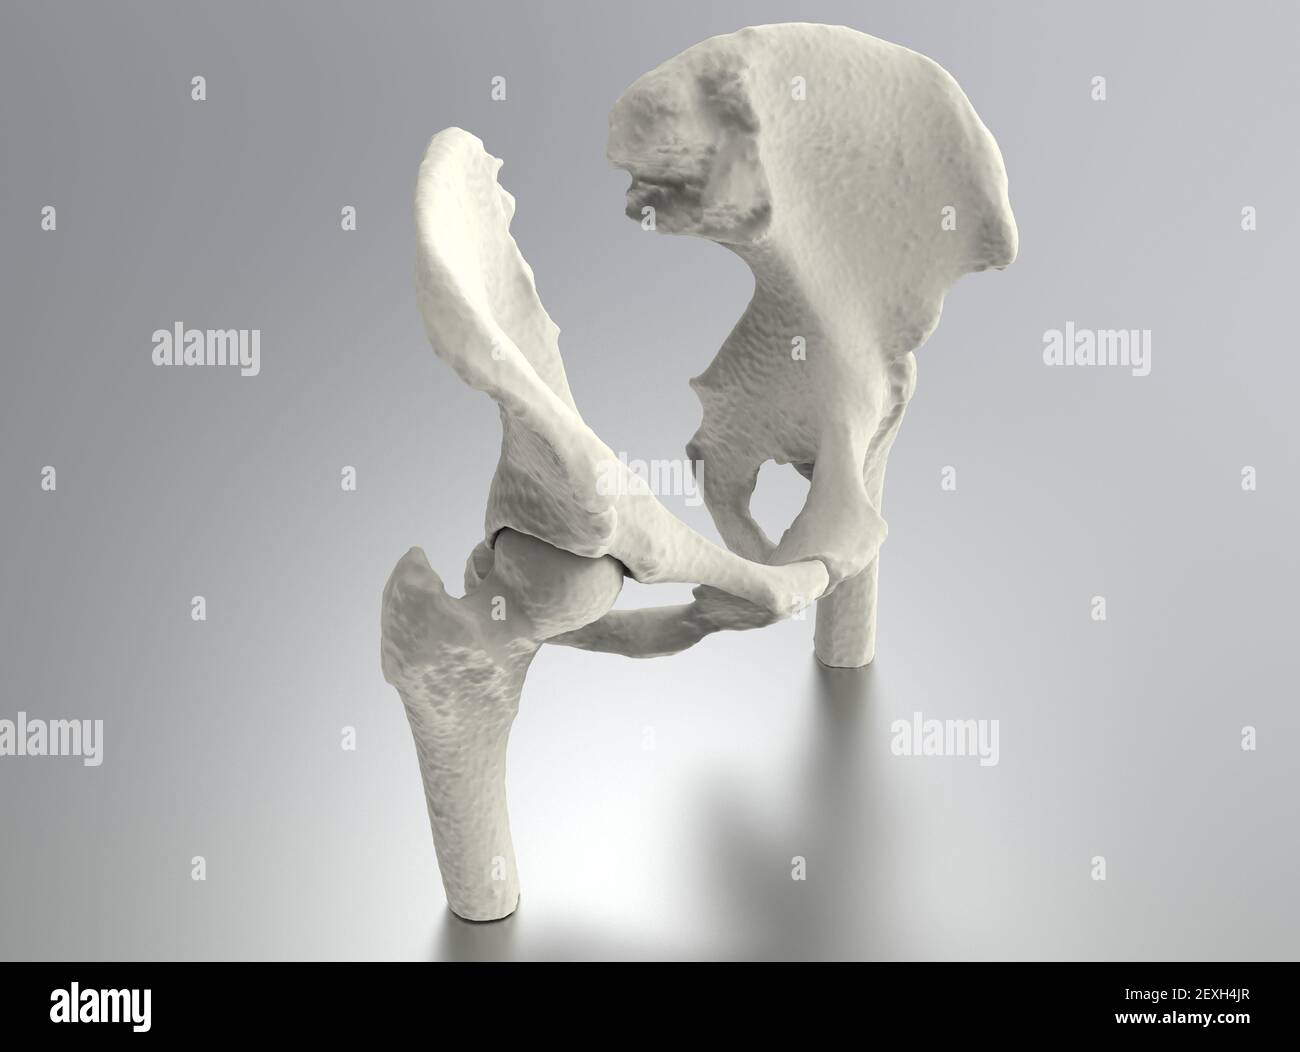 Modello di osso umano, anatomia dell'anca su sfondo metallico, rendering 3D Foto Stock